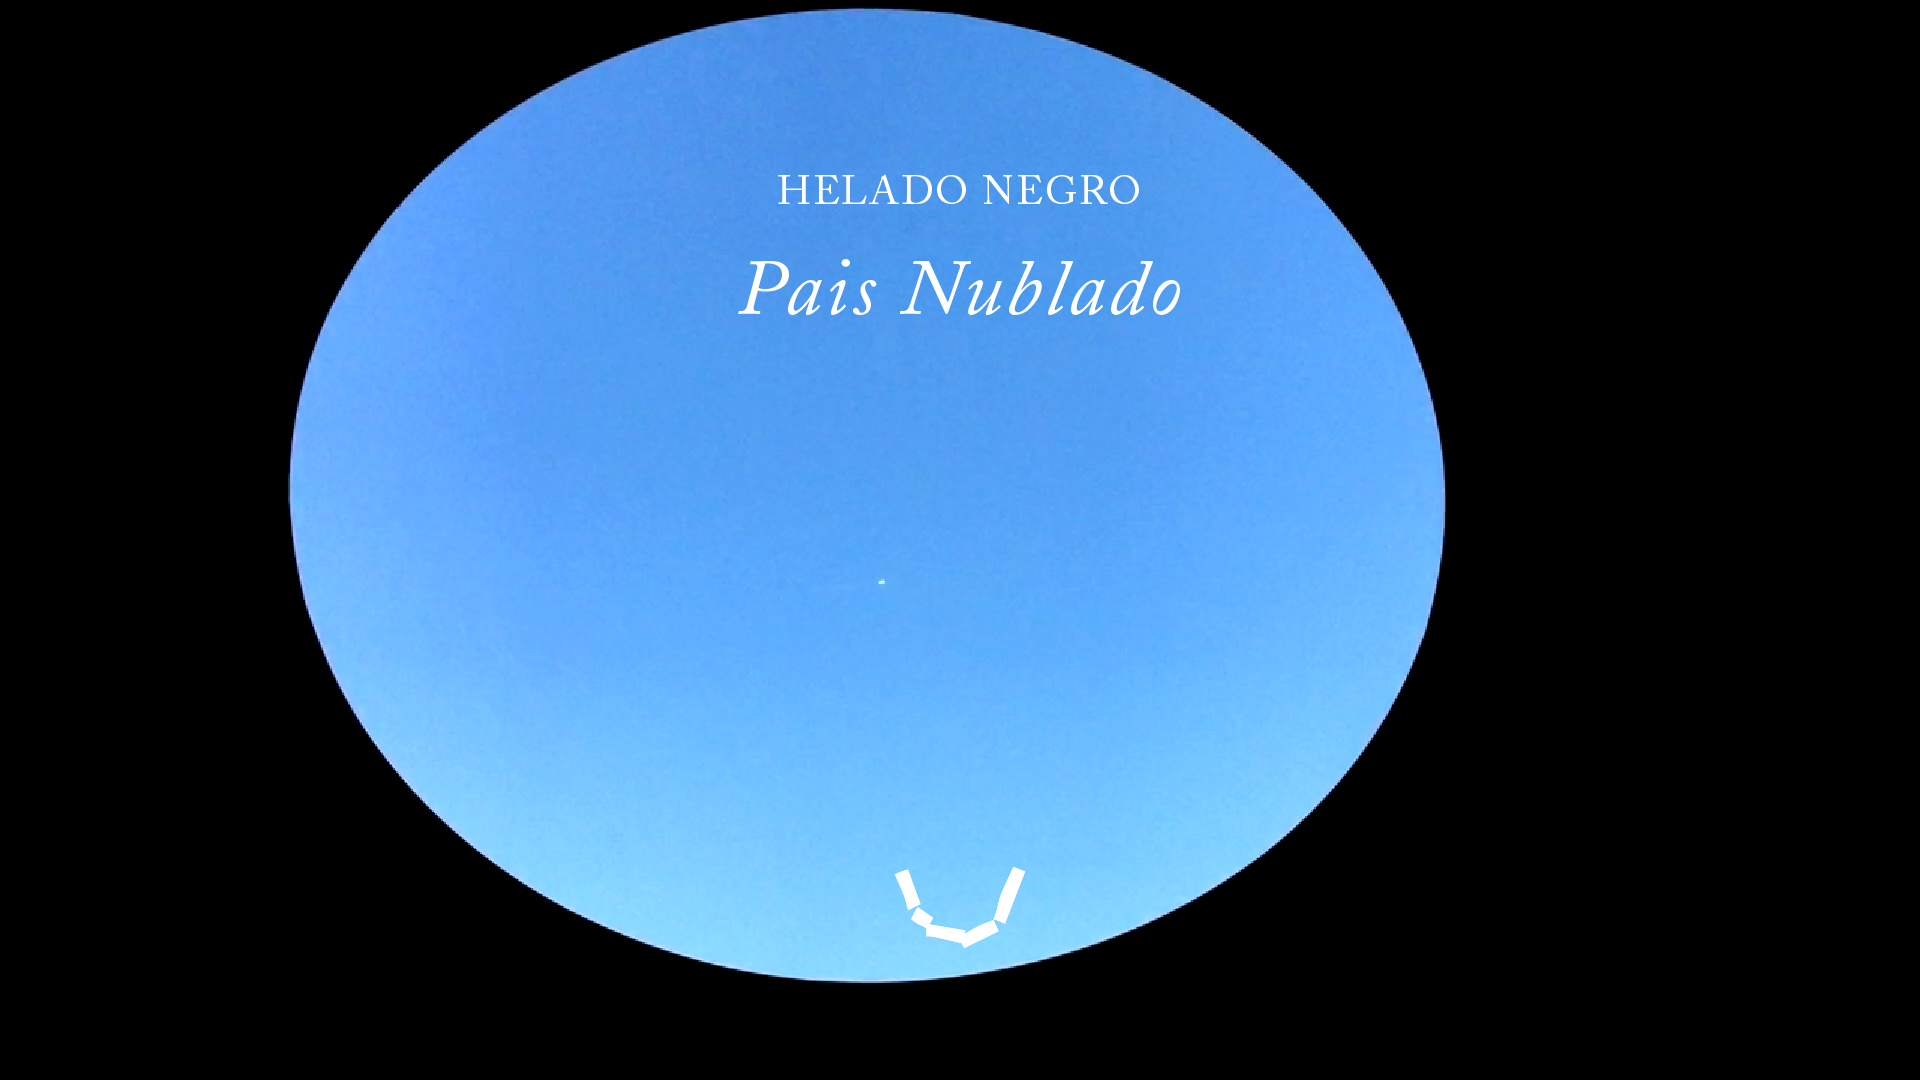 Link to Video for Helado Negro – Pais Nublado